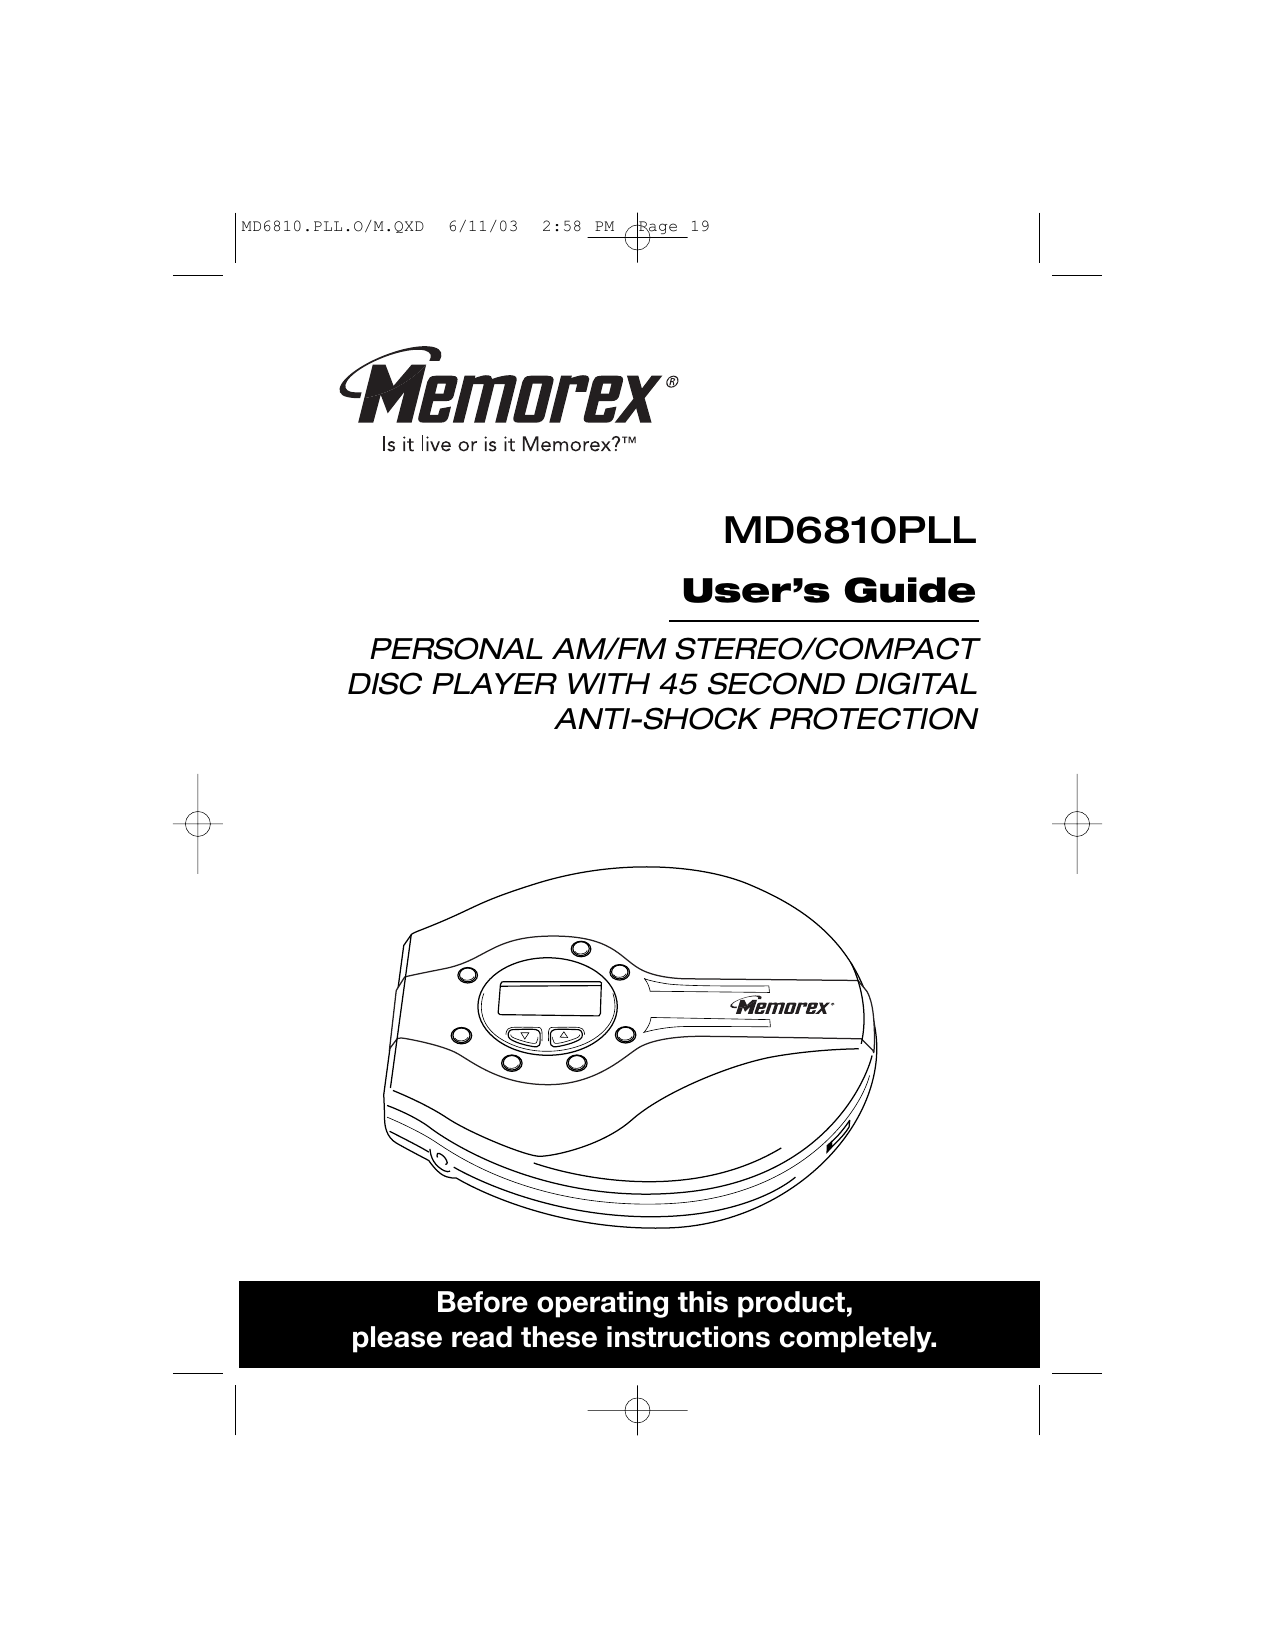 Memorex tv manual